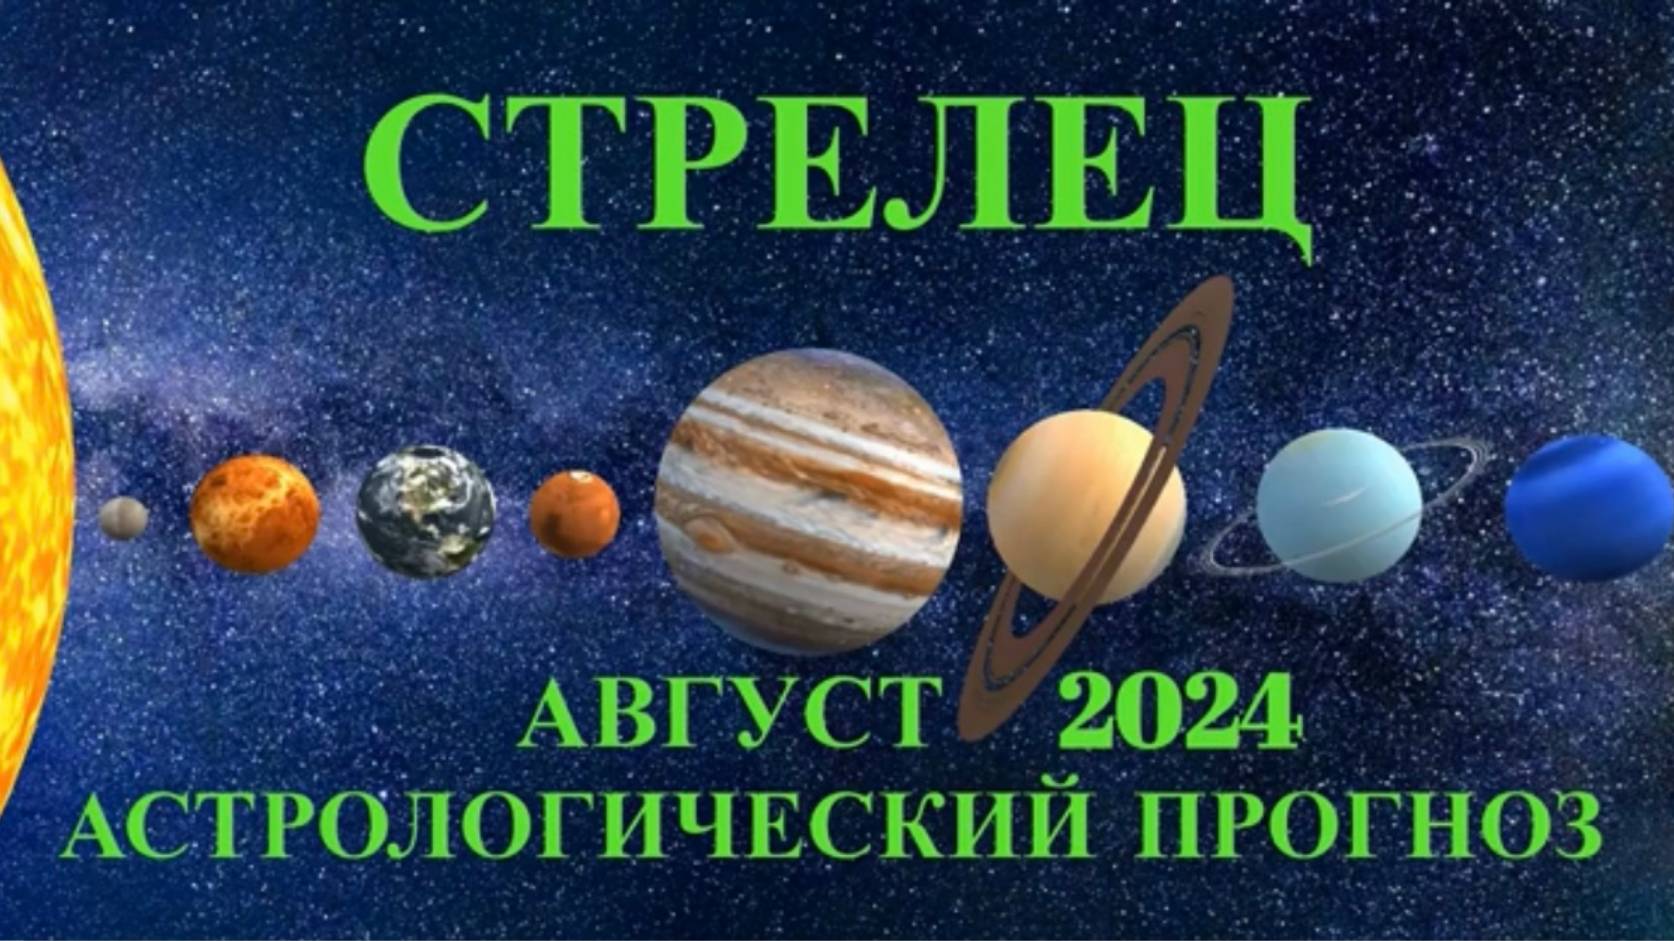 СТРЕЛЕЦ: "АСТРОЛОГИЧЕСКИЙ ПРОГНОЗ на АВГУСТ-2024!!!"